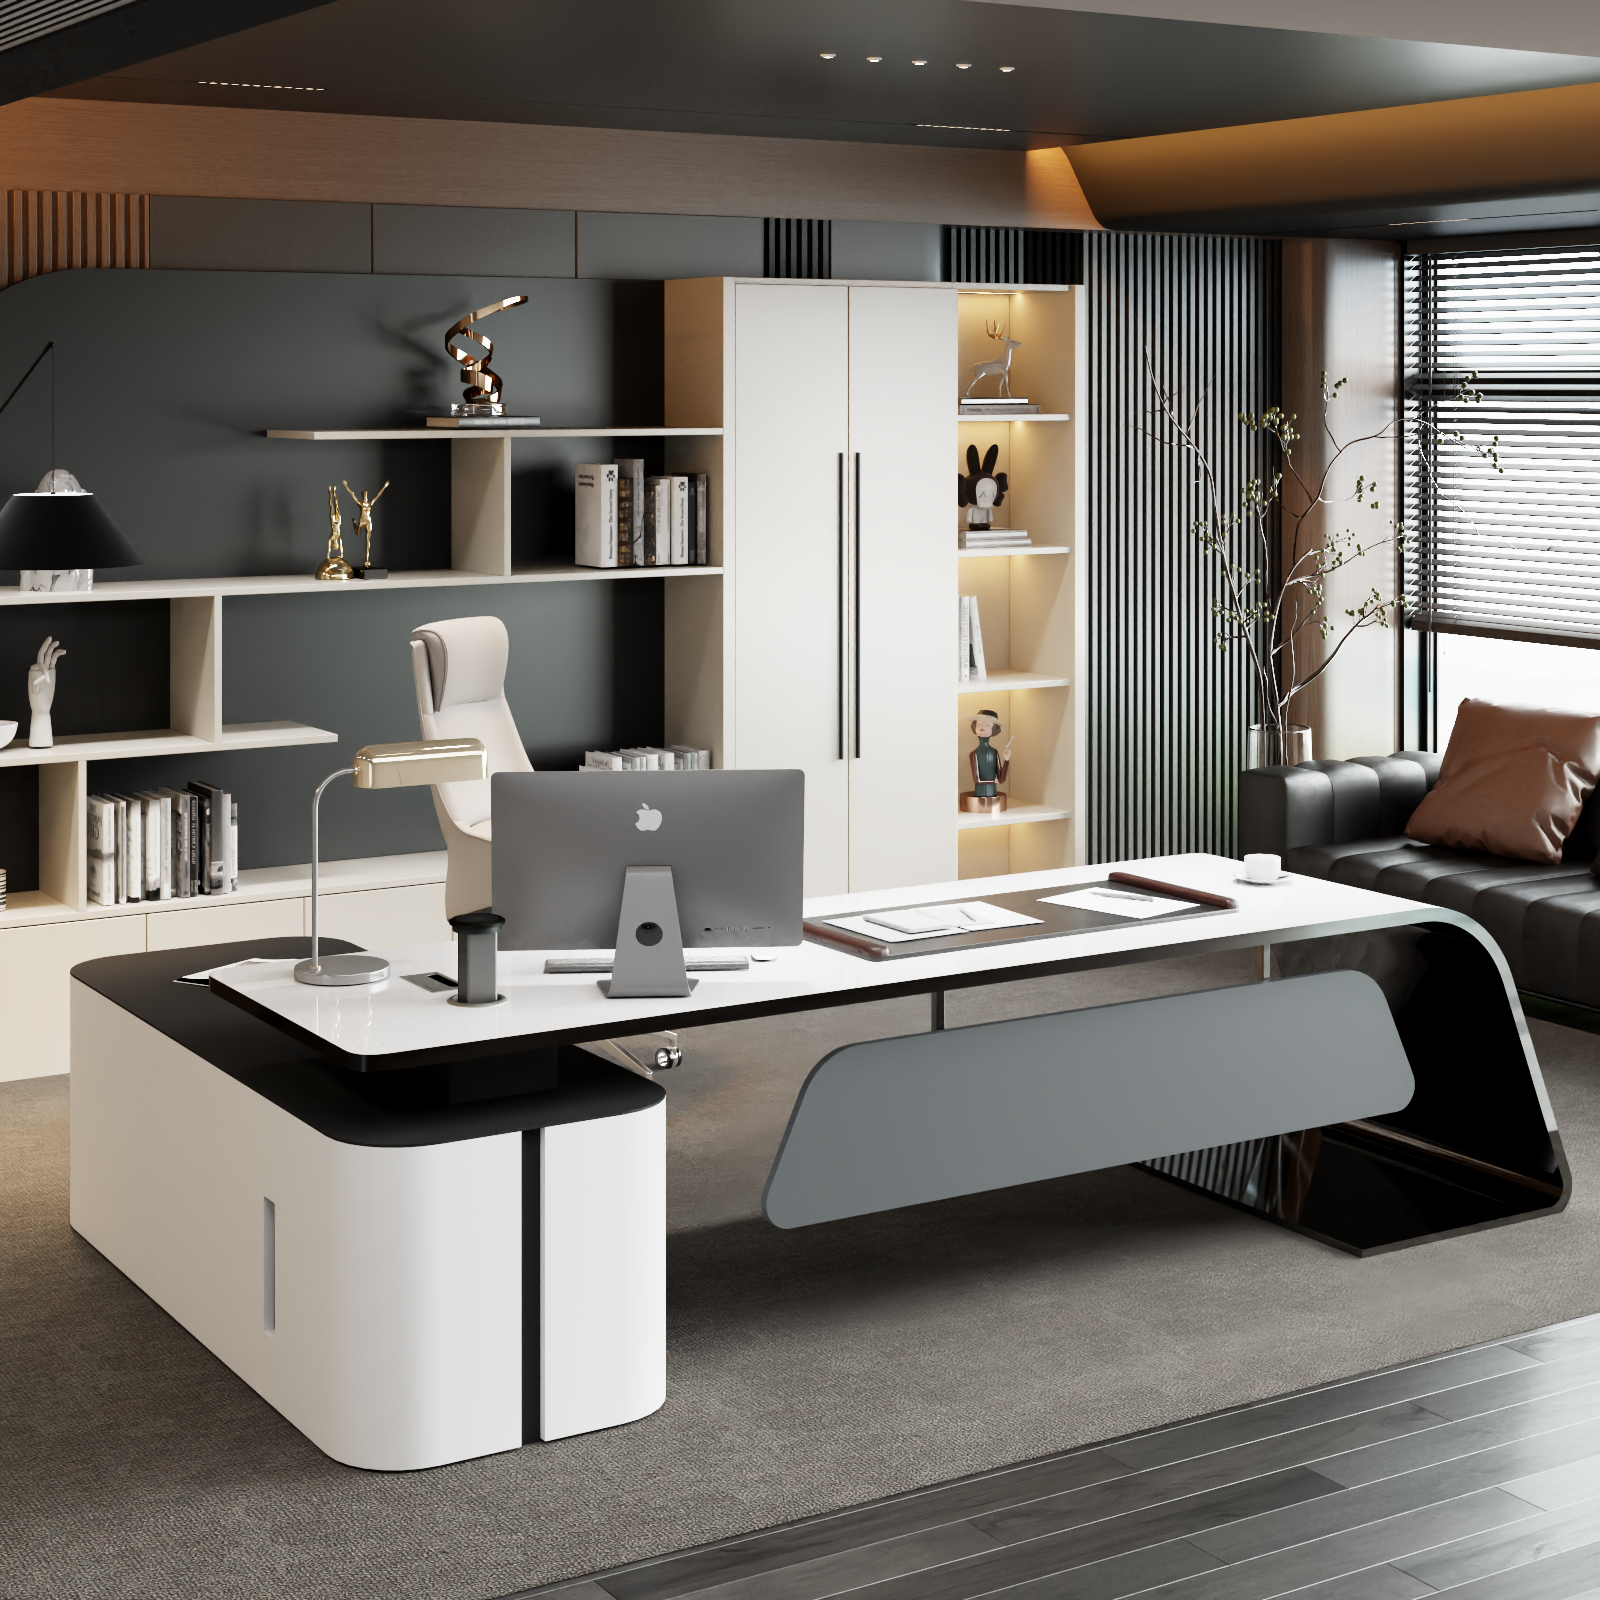 烤漆总裁办公桌简约现代白色大班台创意个性老板桌办公室家具桌椅